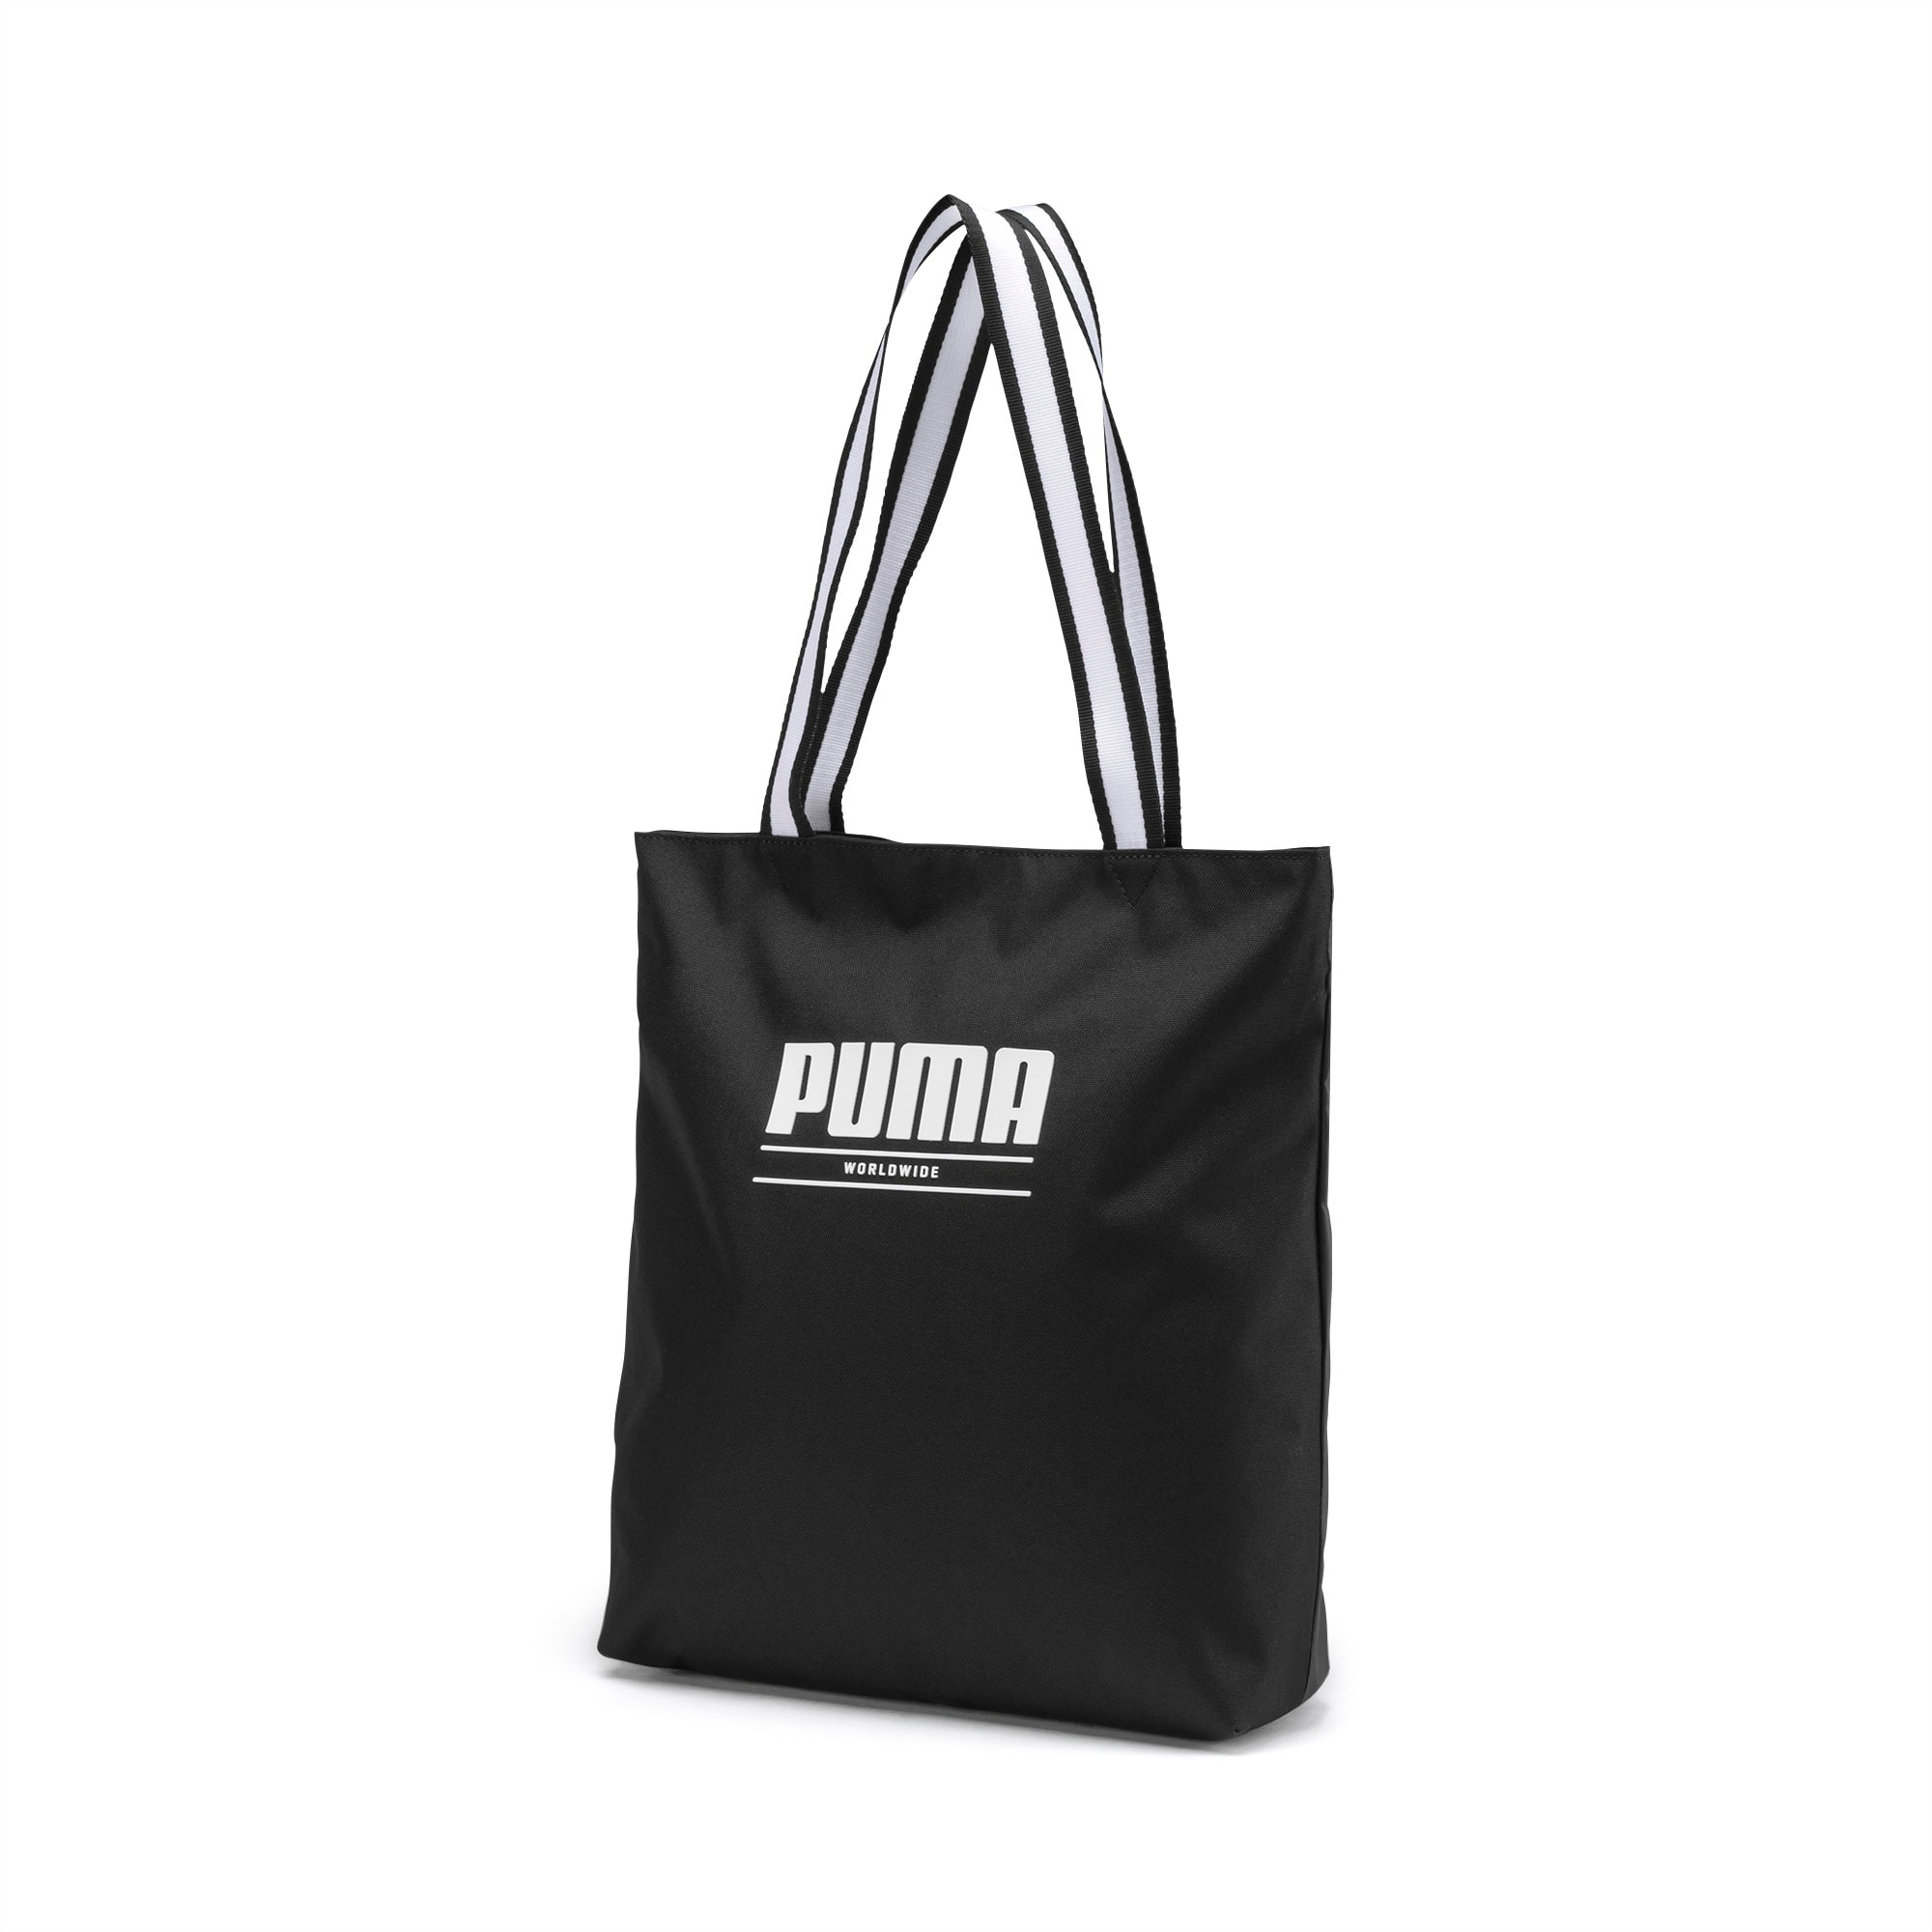 puma worldwide bag